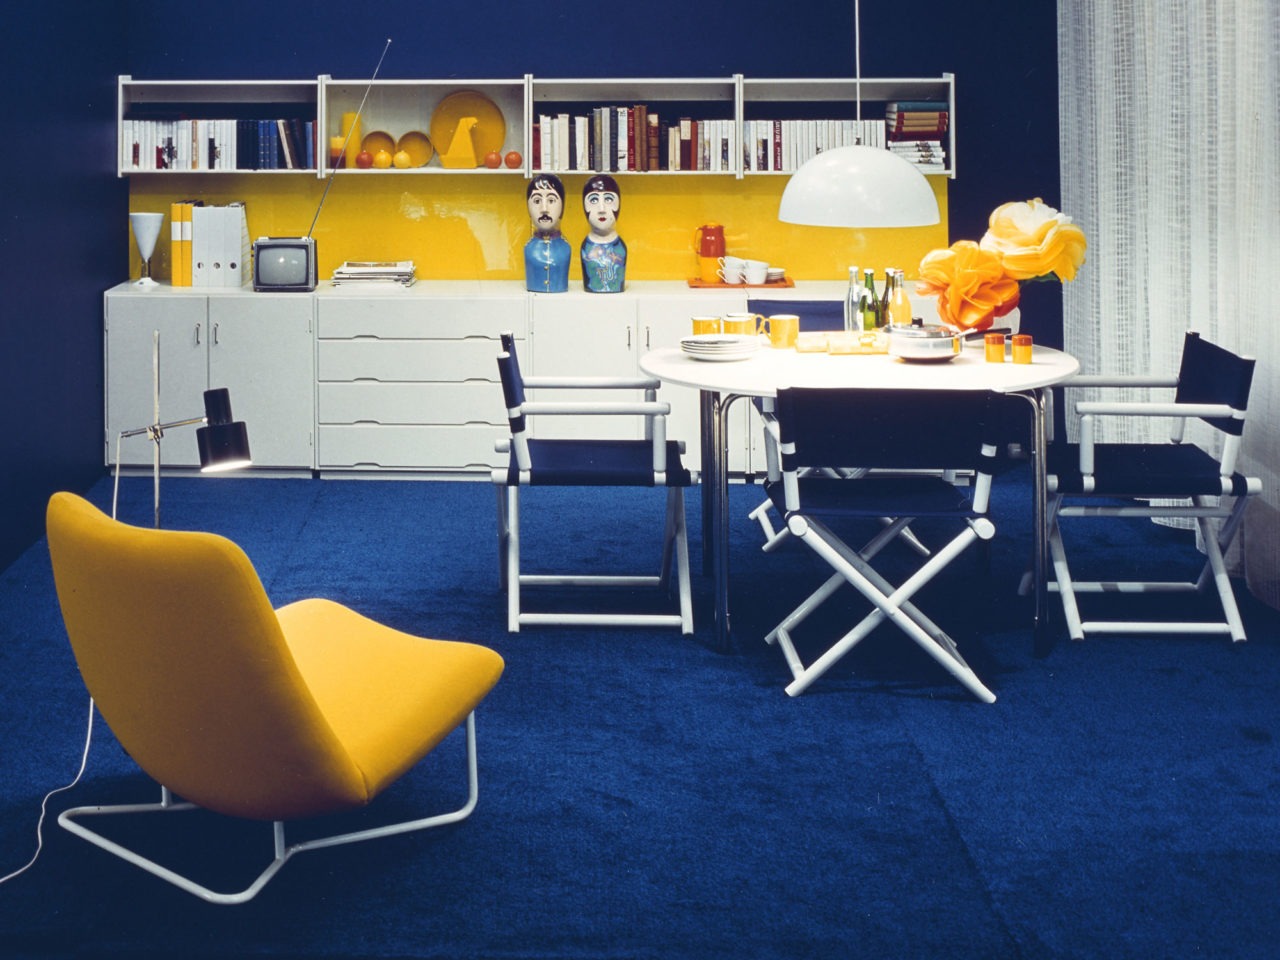 Sala azul, blanca y amarilla. Pieza de almacenaje, sillas de director de cine, mesa, sillón en forma de plátano y alfombra.